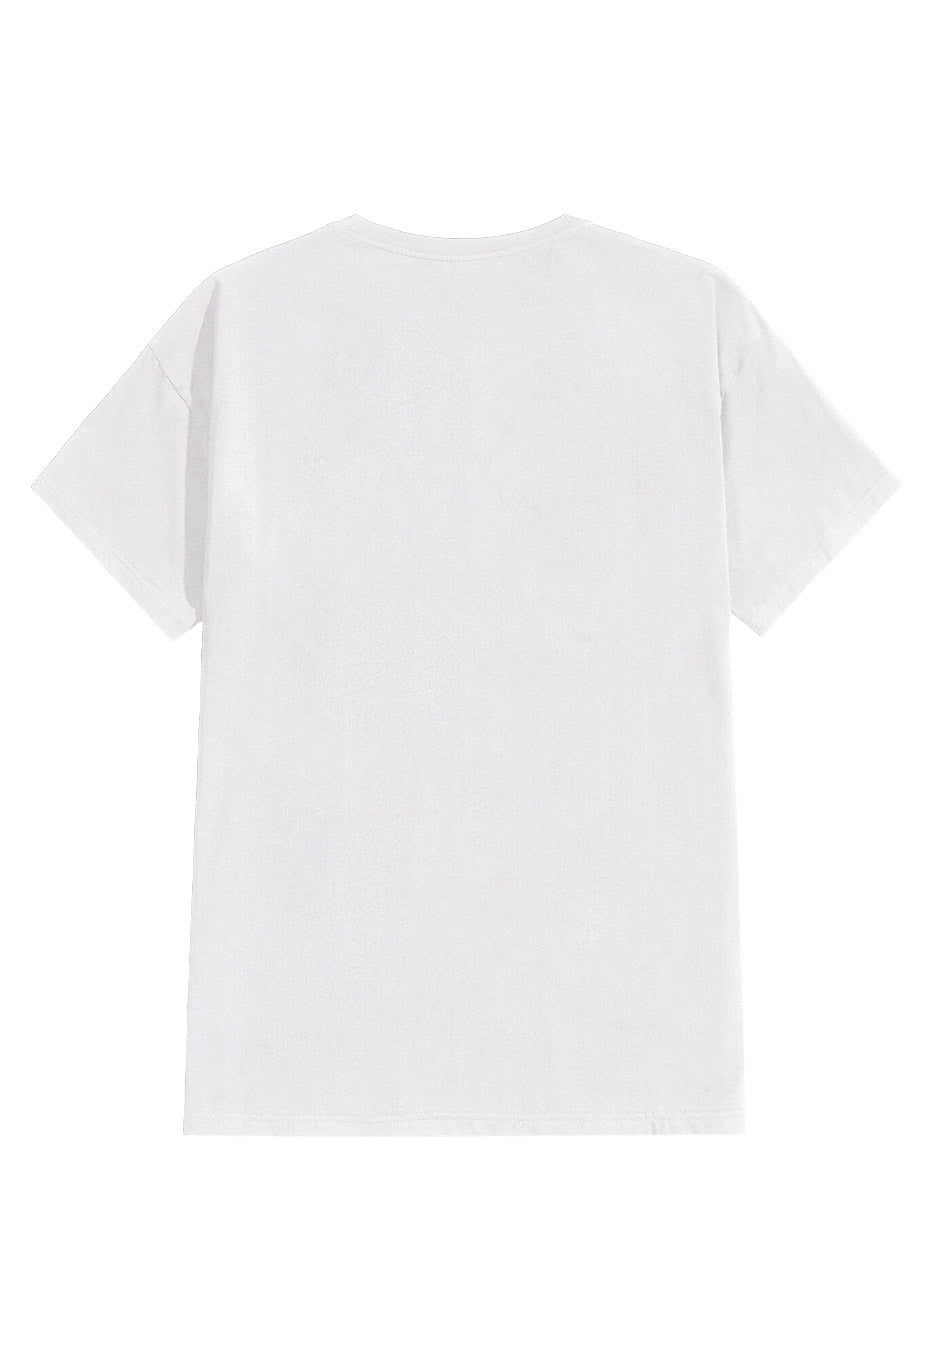 The HU - Hatan Har White - T-Shirt